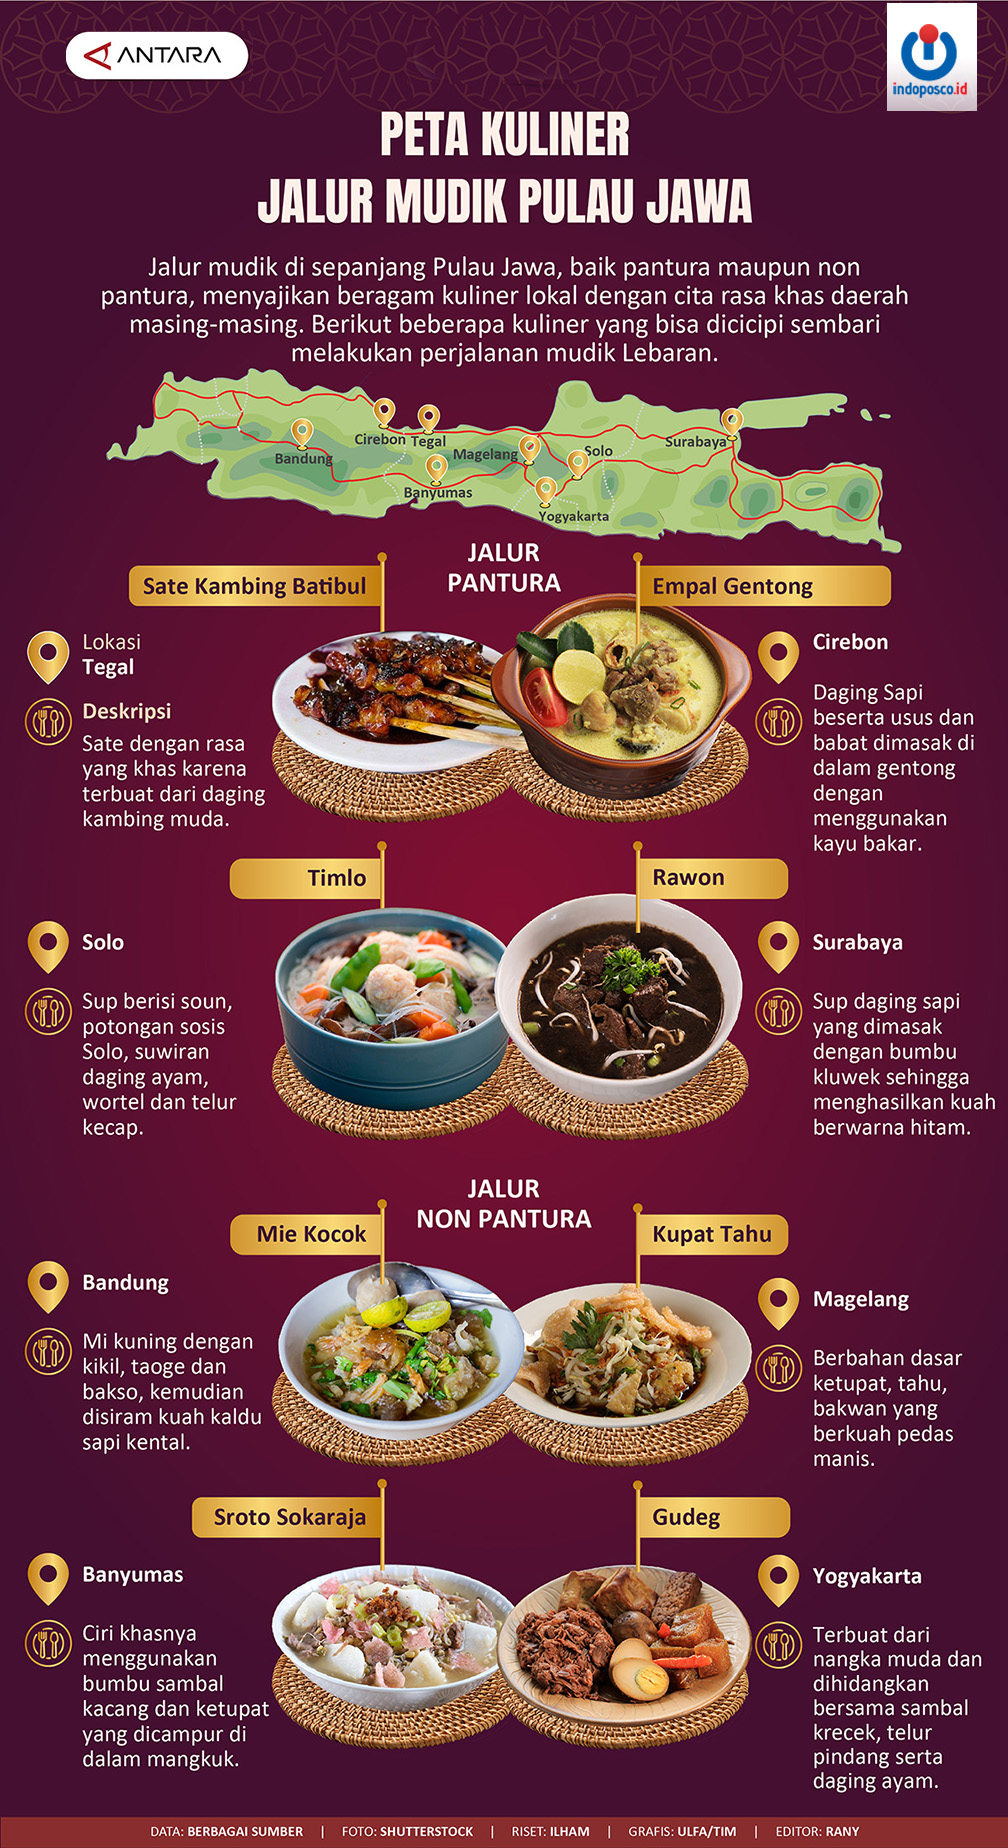 Peta Kuliner Jalur Mudik Pulau Jawa